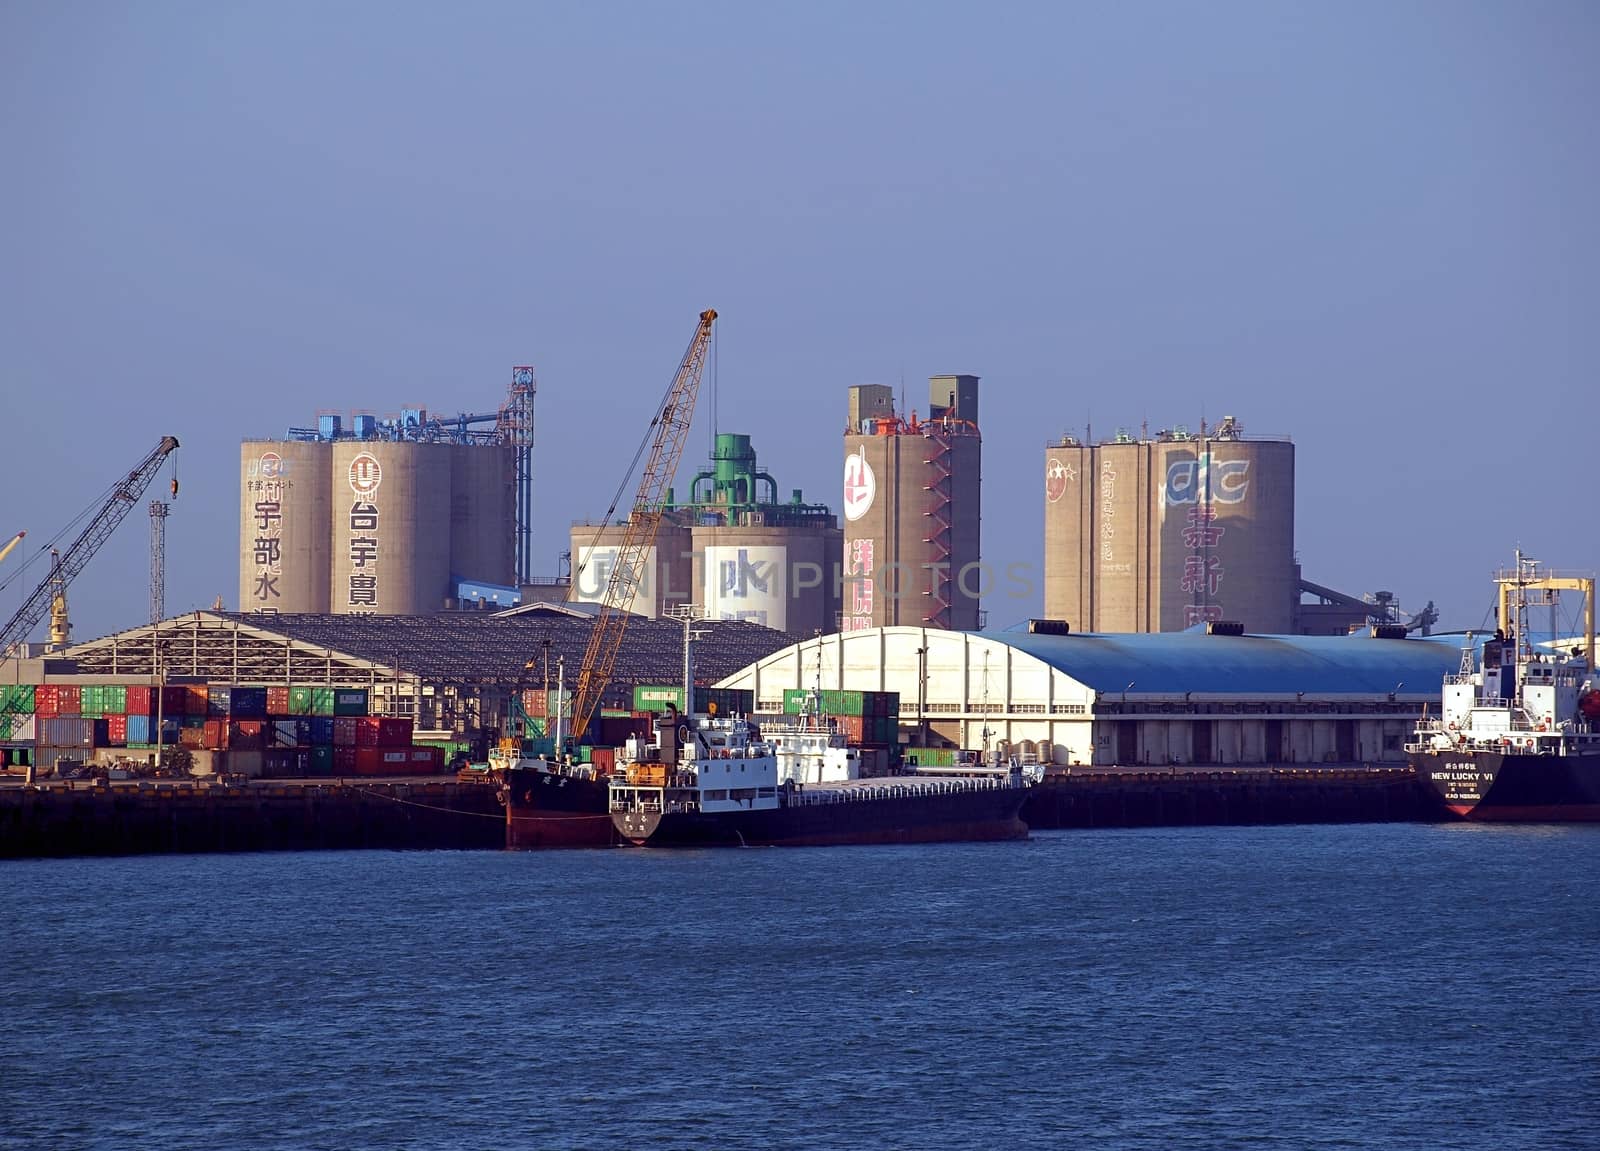 Docks and Cranes at Taichung Port in Taiwan by shiyali